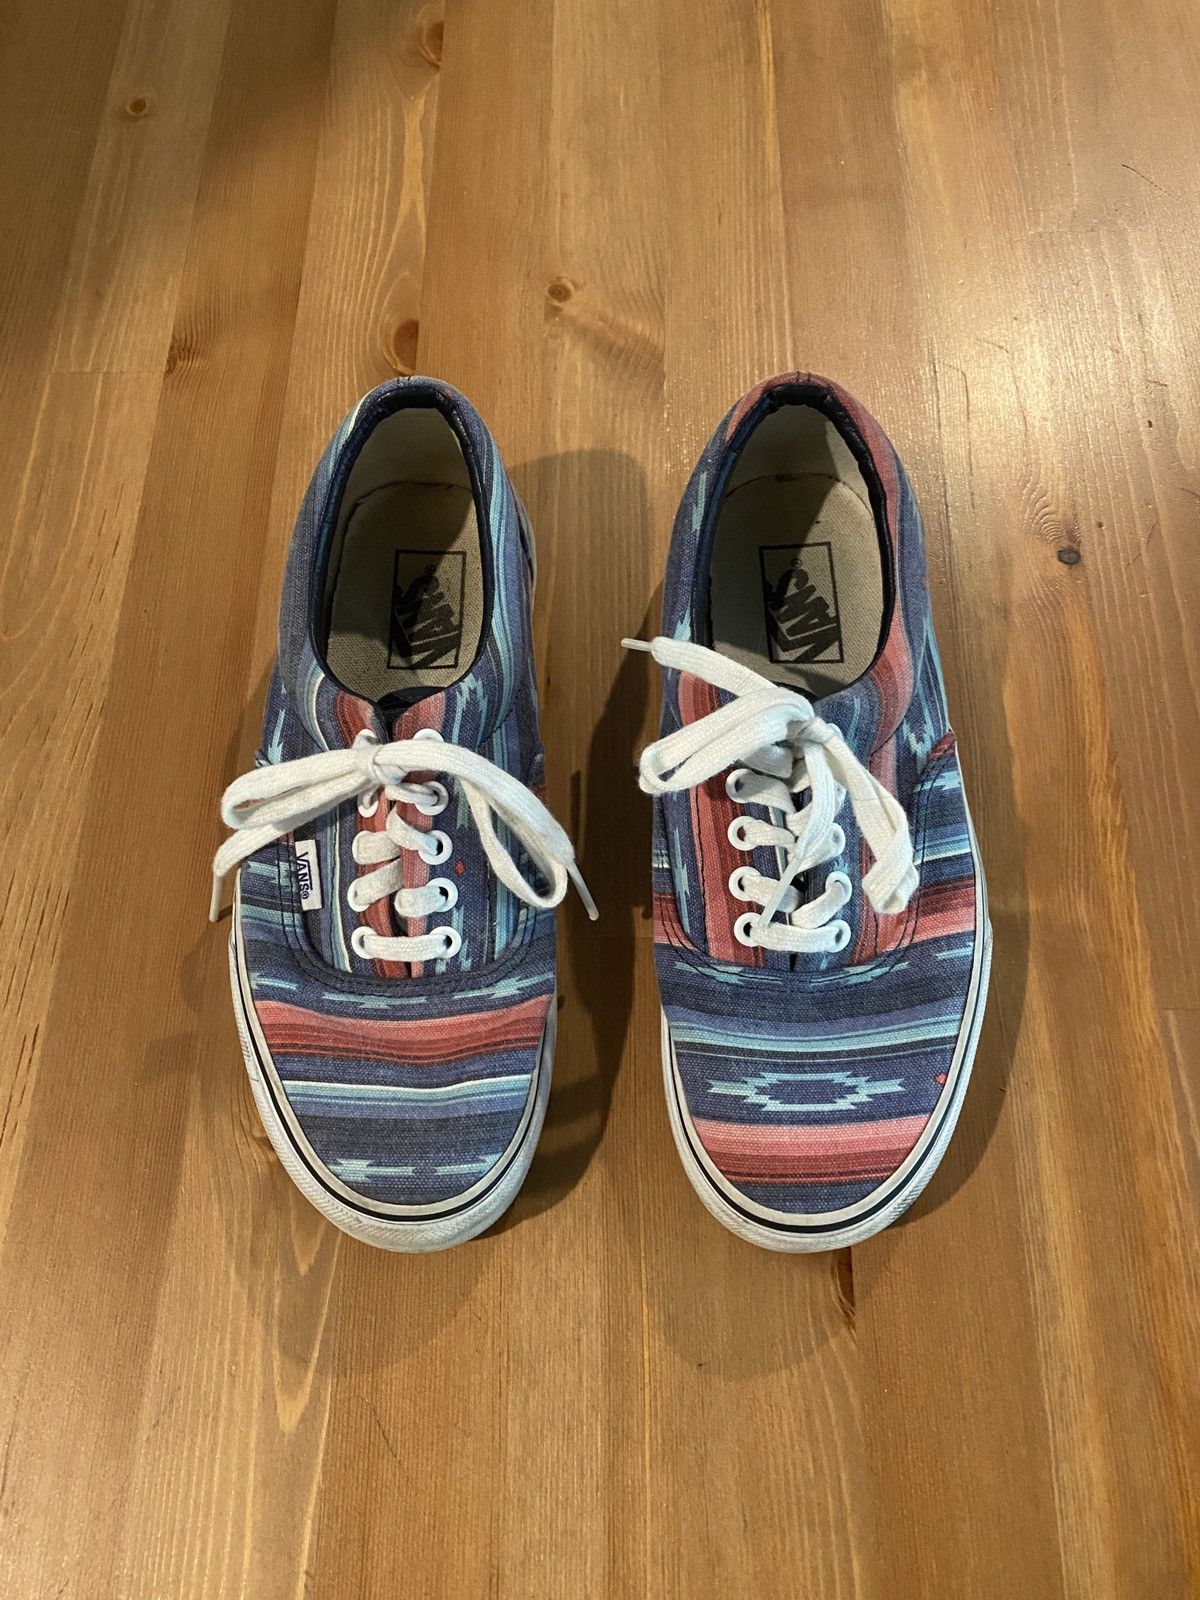 Vans Vans van doren era multicolor blue stripe shoes sneakers | Grailed